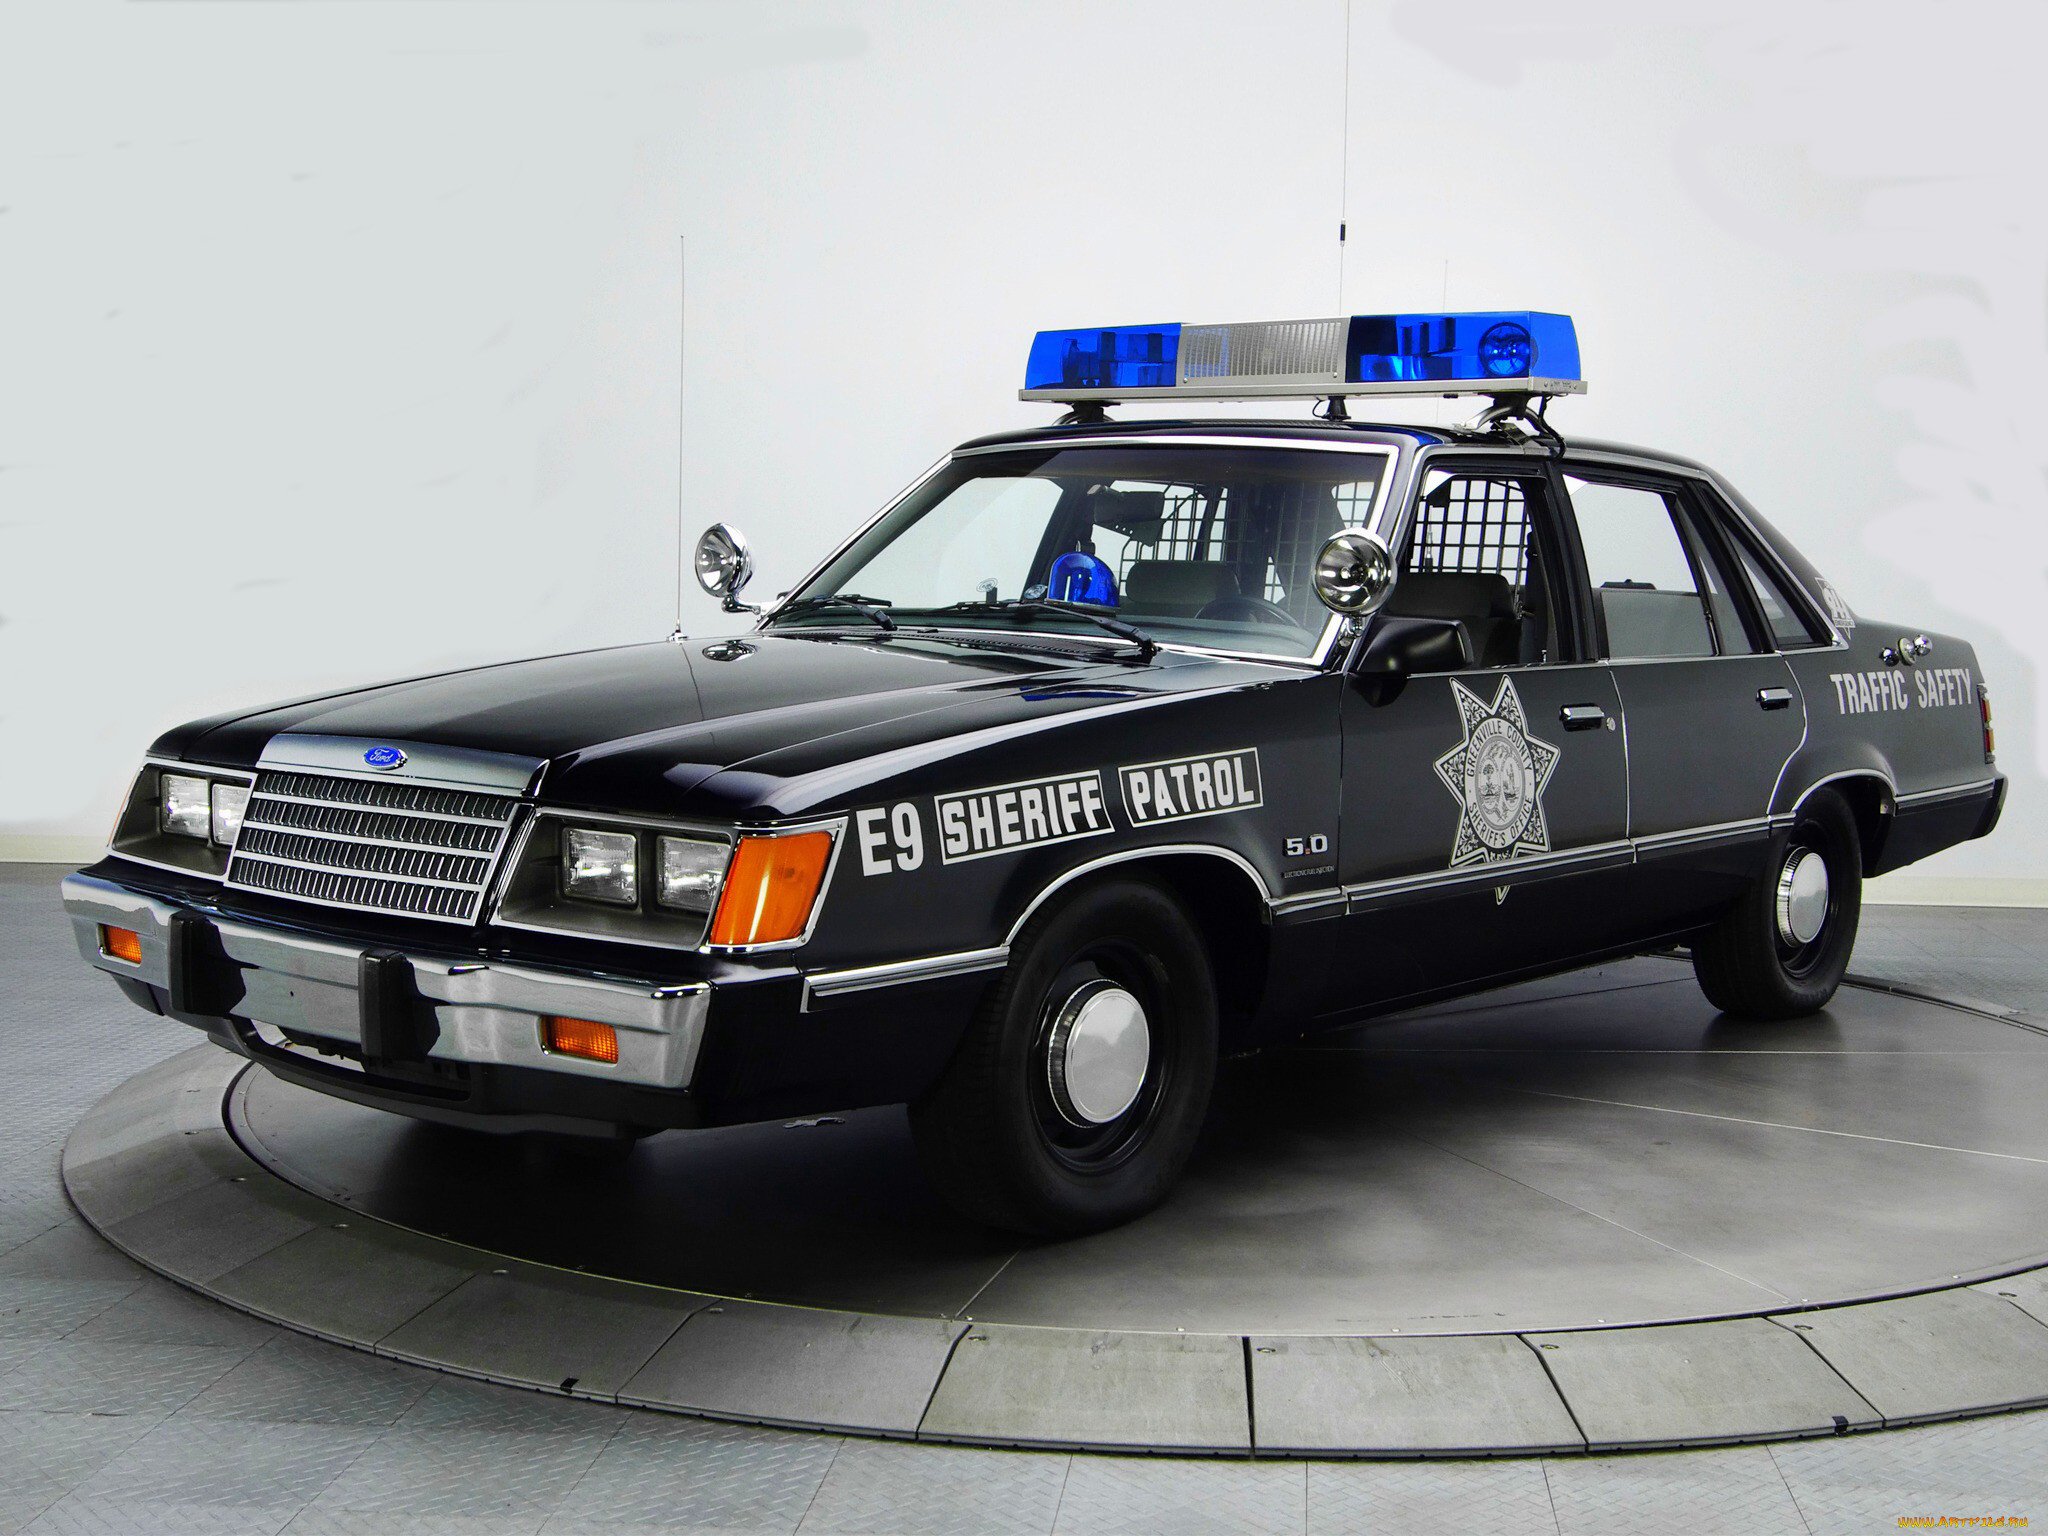 Нужны полицейские машины. Chevrolet Caprice Police Interceptor 1980. Chevrolet Caprice Police Interceptor. Chevrolet Caprice 2015 Police. Форд Лтд 1984 полицейский.